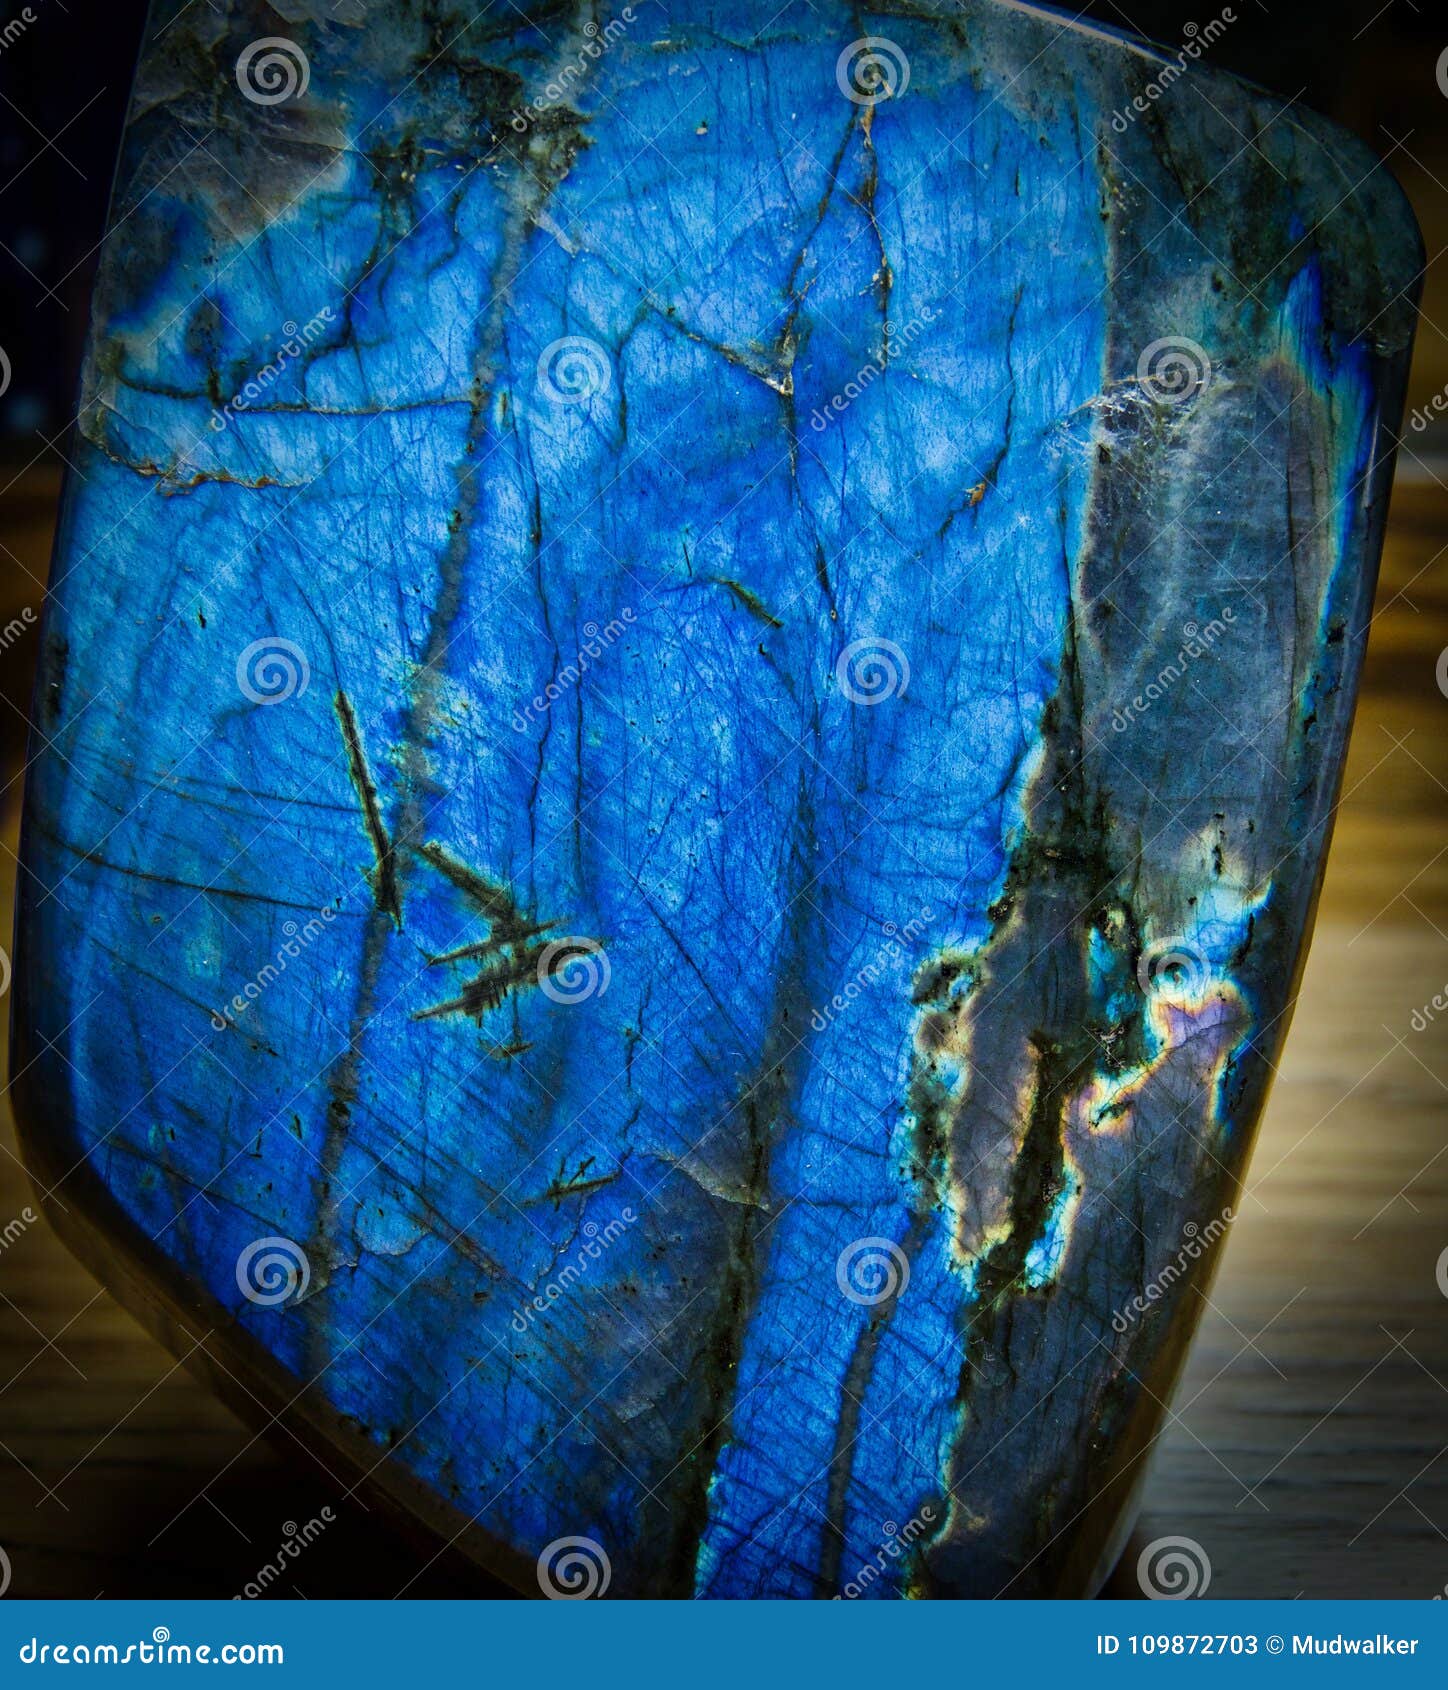 Polished Labradorite stock image. Image of rainbow, blue - 109872703